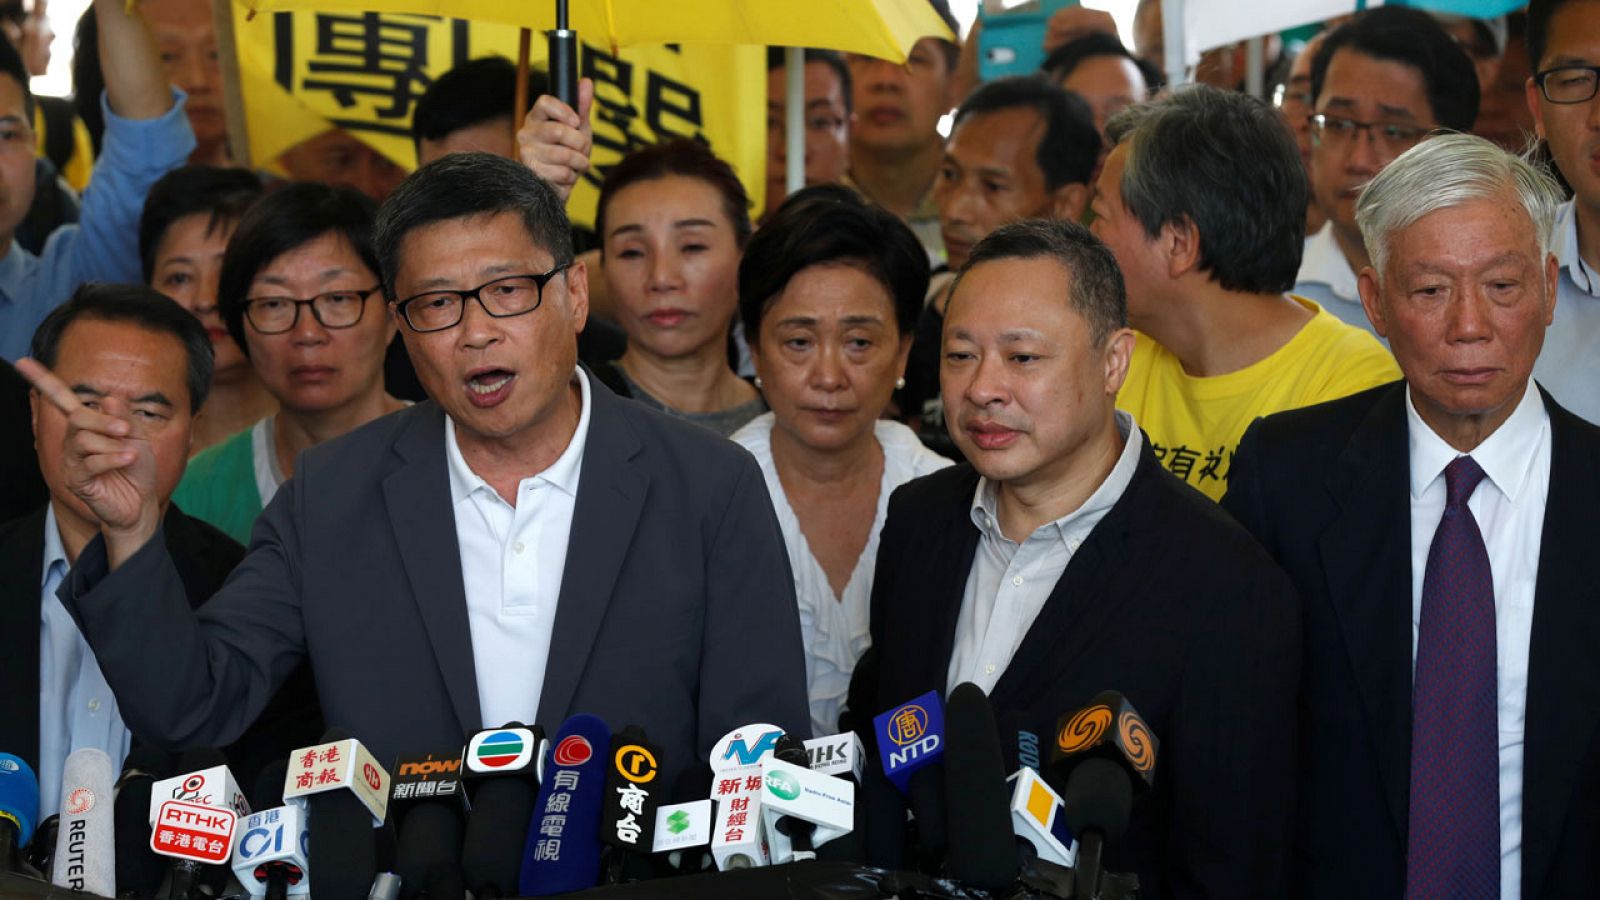 Los fundadores del movimiento por la democracia de Hong Kong, Chan Kin-man, Benny Tai y Chu Yiu-ming, llegan al tribunal. REUTERS/Tyrone Siu